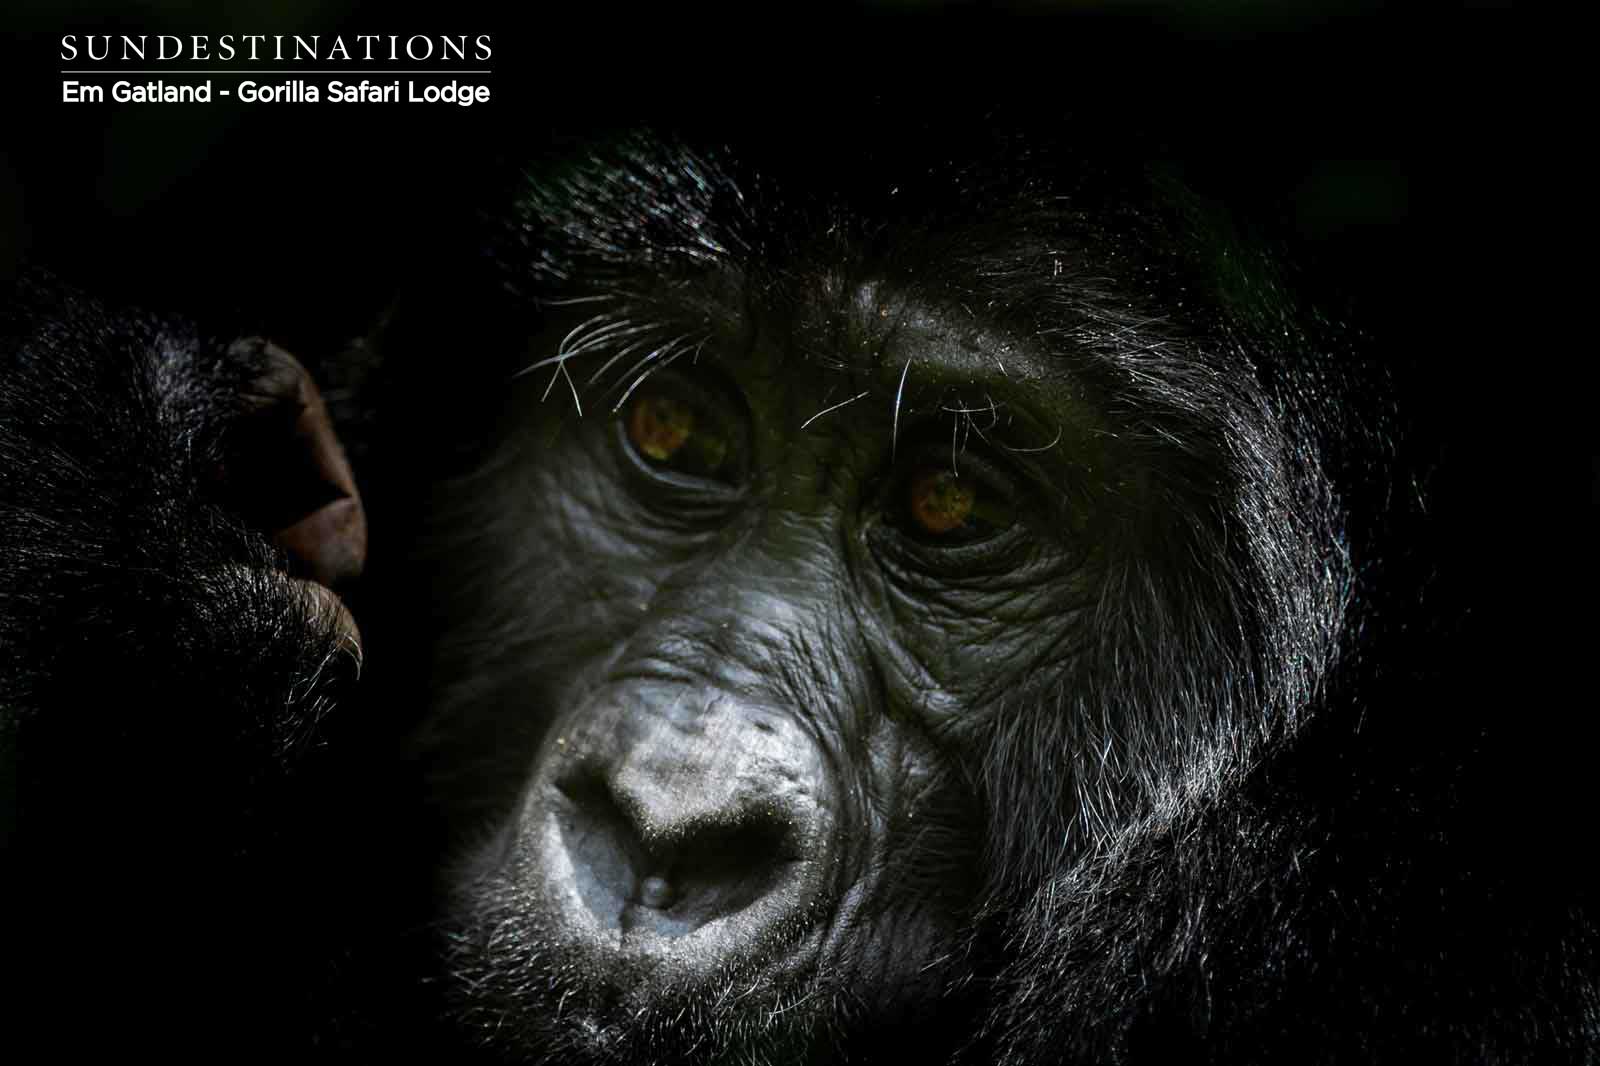 Portrait of Gorilla